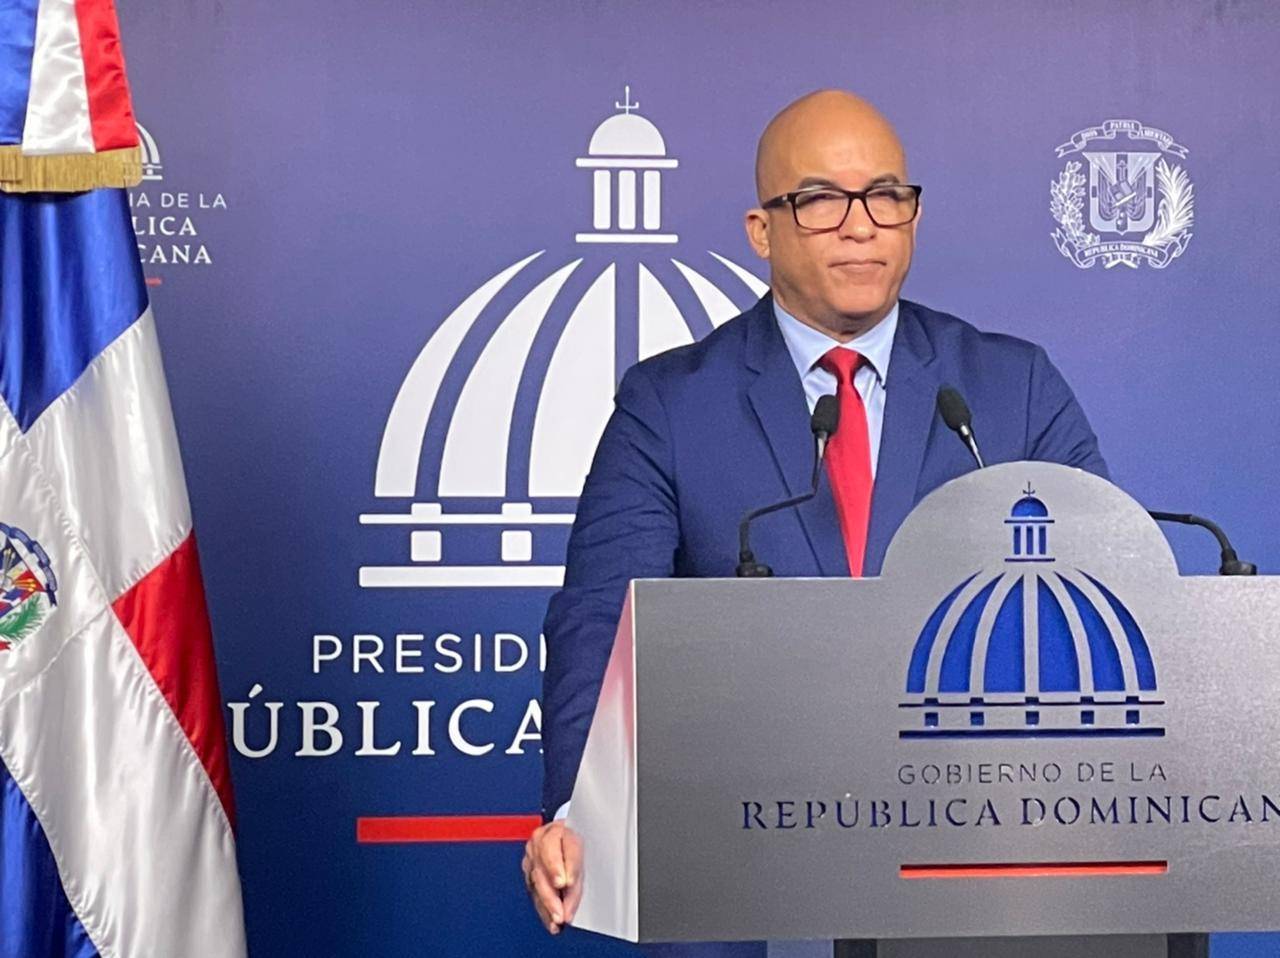 Video: Presidente Luis Abinader recupera bienes públicos